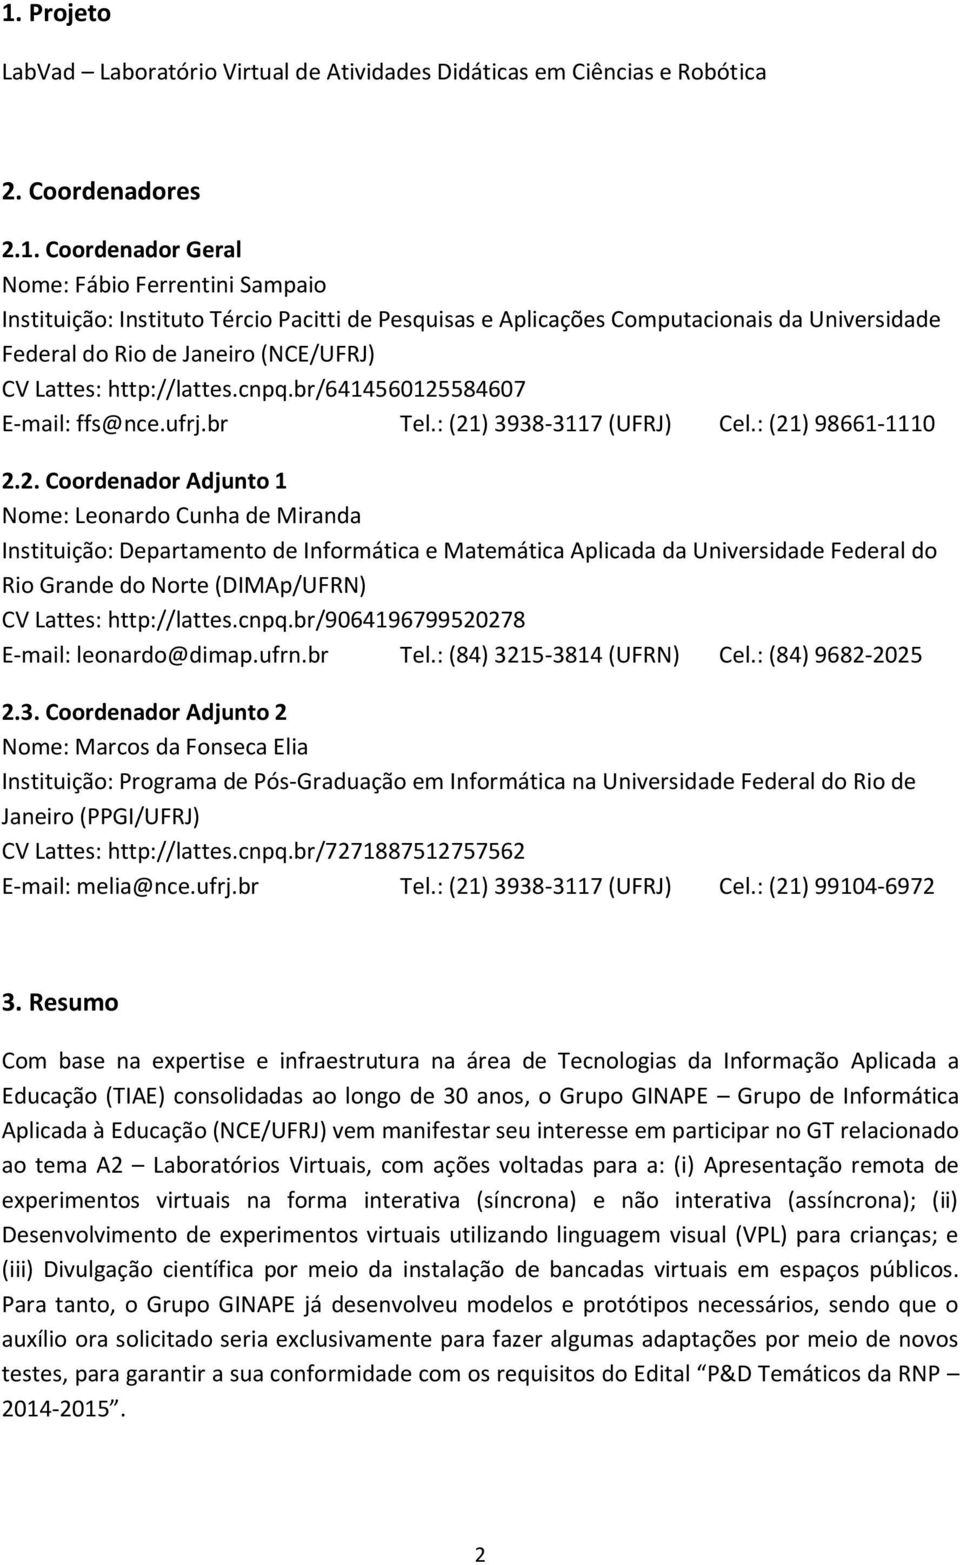 : (21) 98661-1110 2.2. Coordenador Adjunto 1 Nome: Leonardo Cunha de Miranda Instituição: Departamento de Informática e Matemática Aplicada da Universidade Federal do Rio Grande do Norte (DIMAp/UFRN)